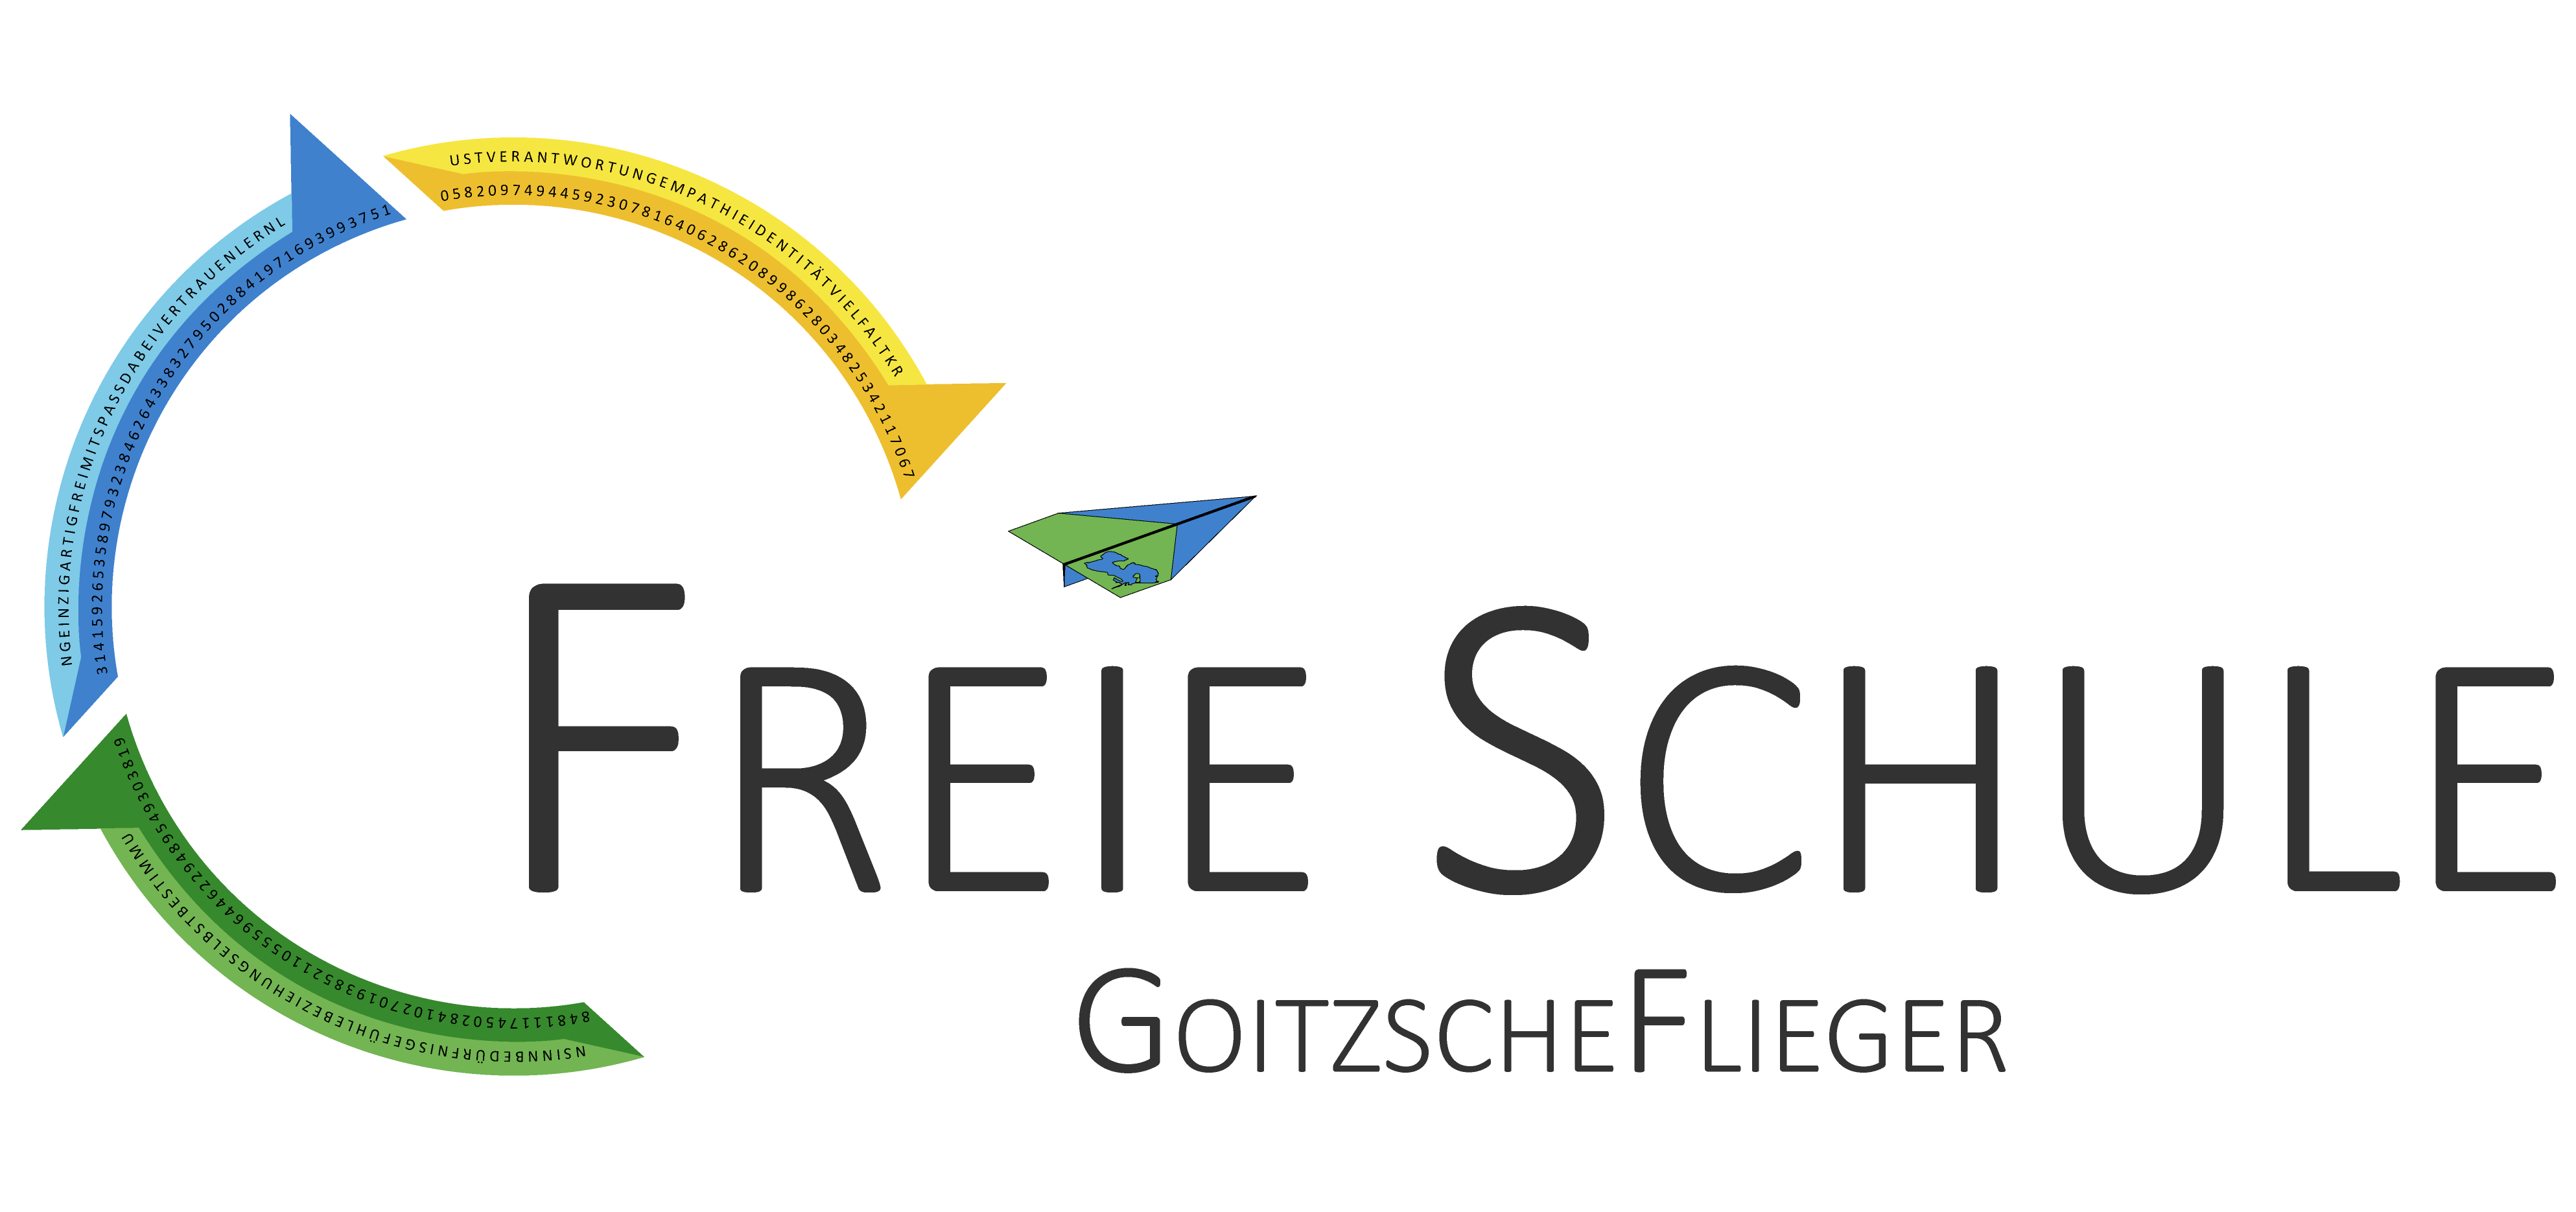 Freie Schule GoitzscheFlieger Goitzsche Flieger Siliva eV siliva.de fs-gf.de fsgf